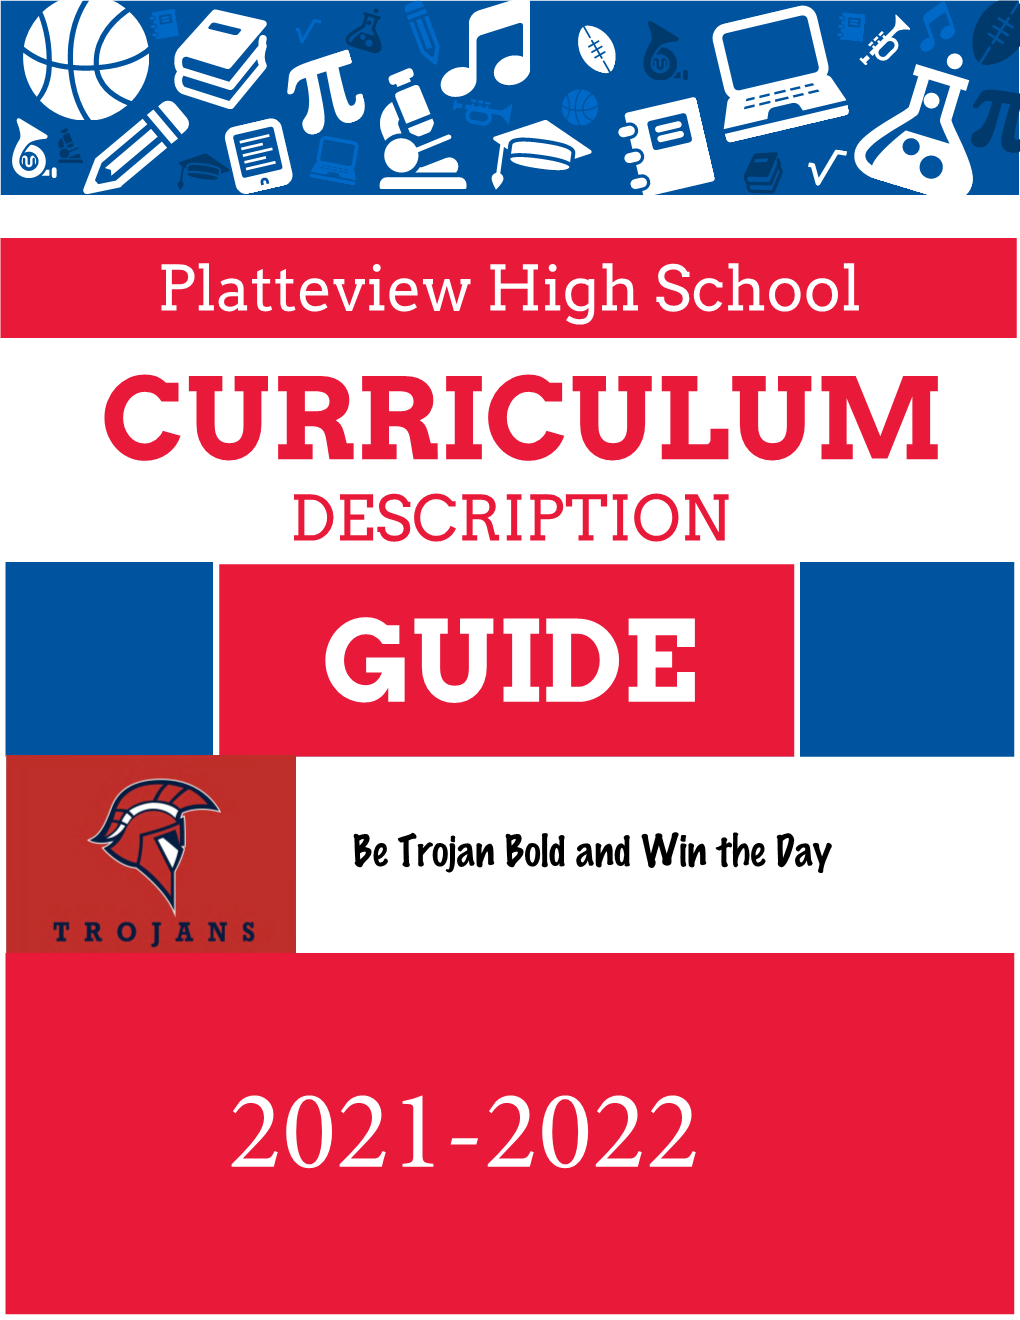 Curriculum Guide 2021-2022